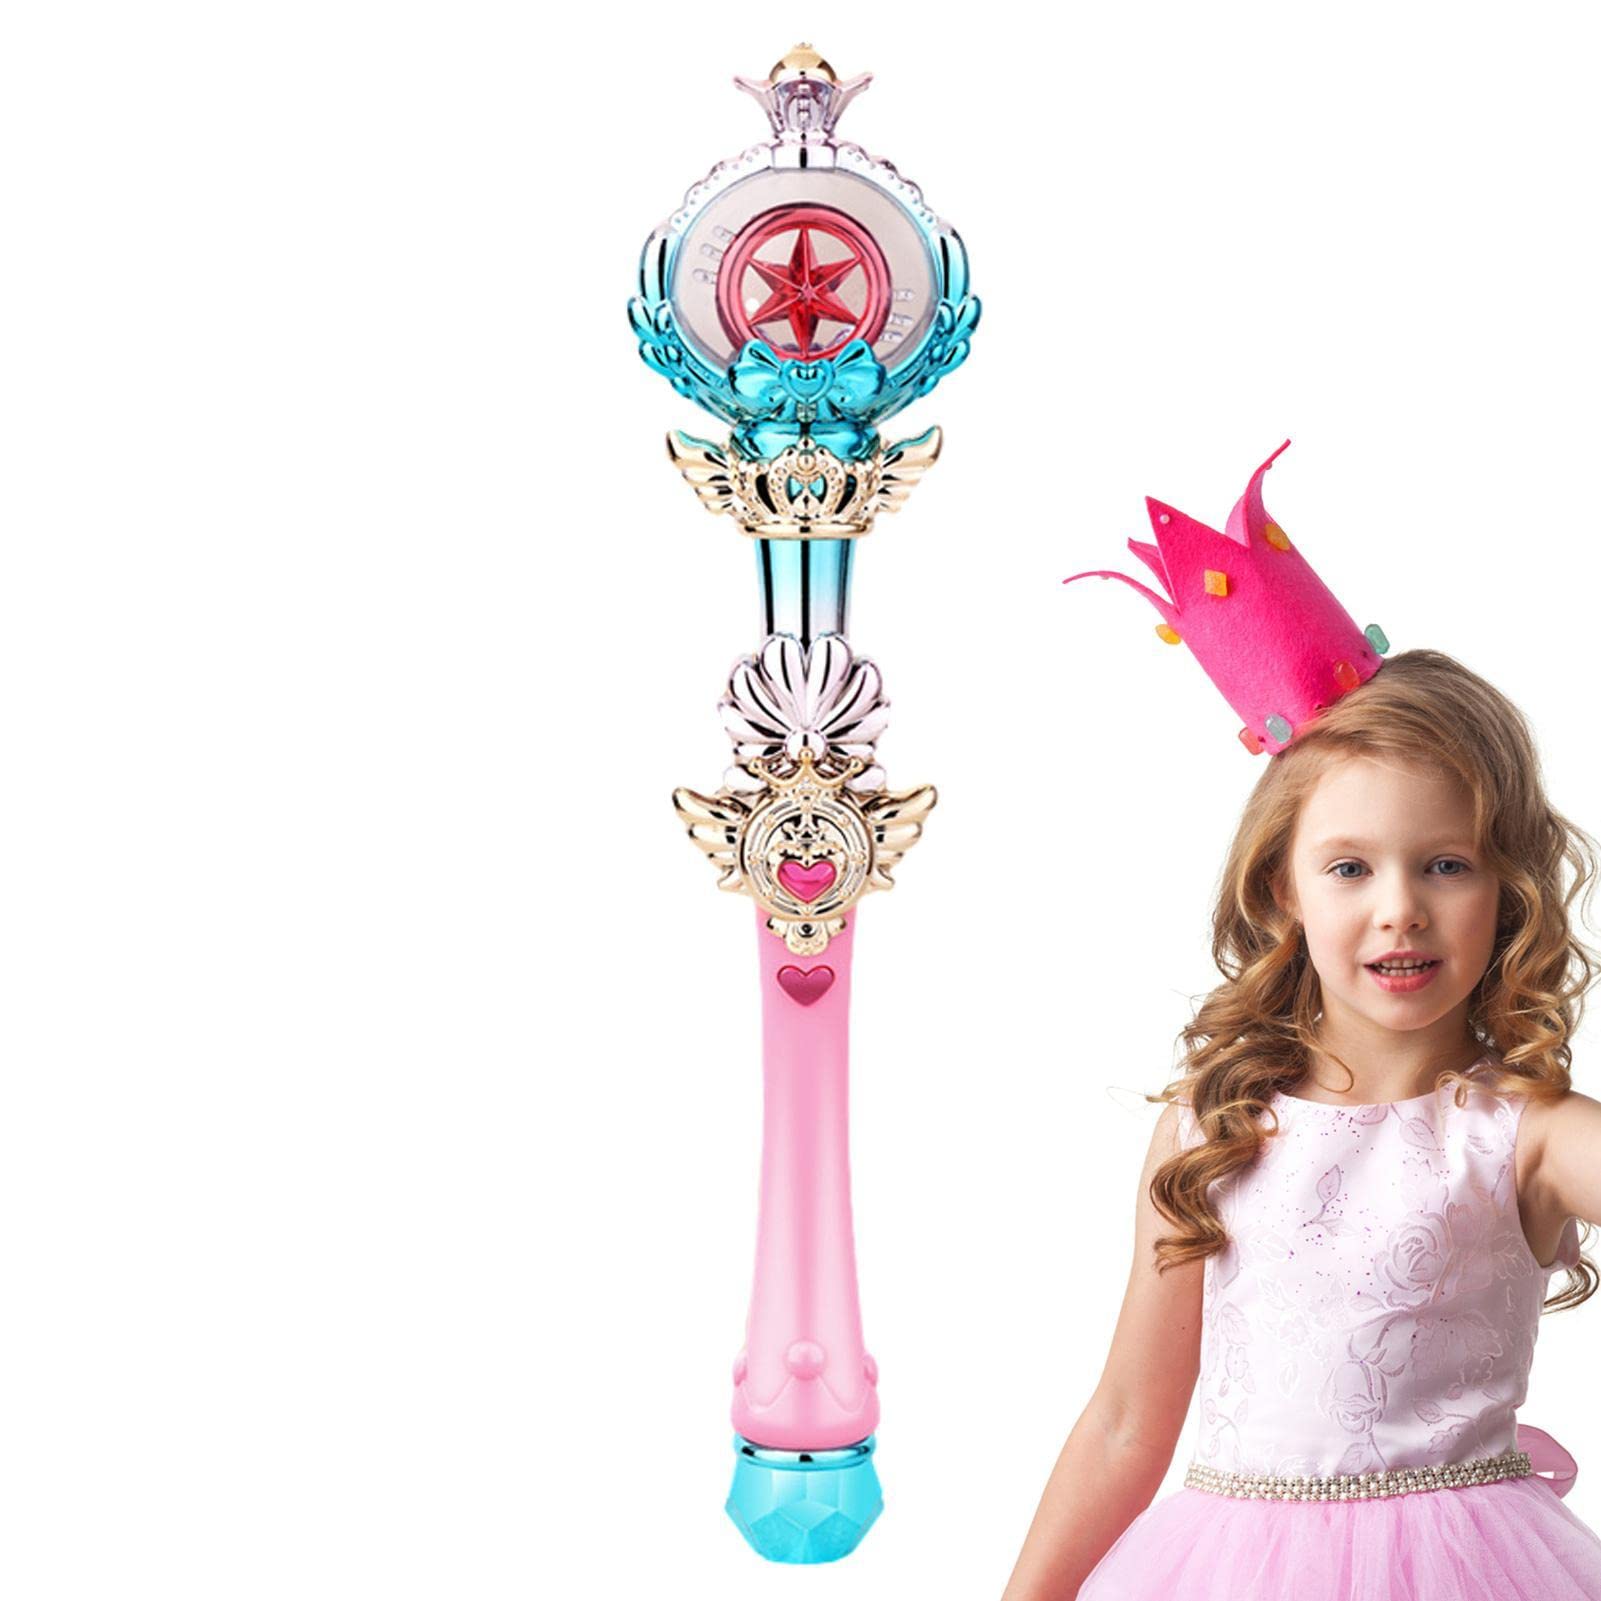 Abbto Prinzessin Zauberstab Spielzeug - Rosa leuchtender Zauberstab Prinzessin Kostümzubehör Spielzeug | LED-beleuchteter Zauberstab für Halloween